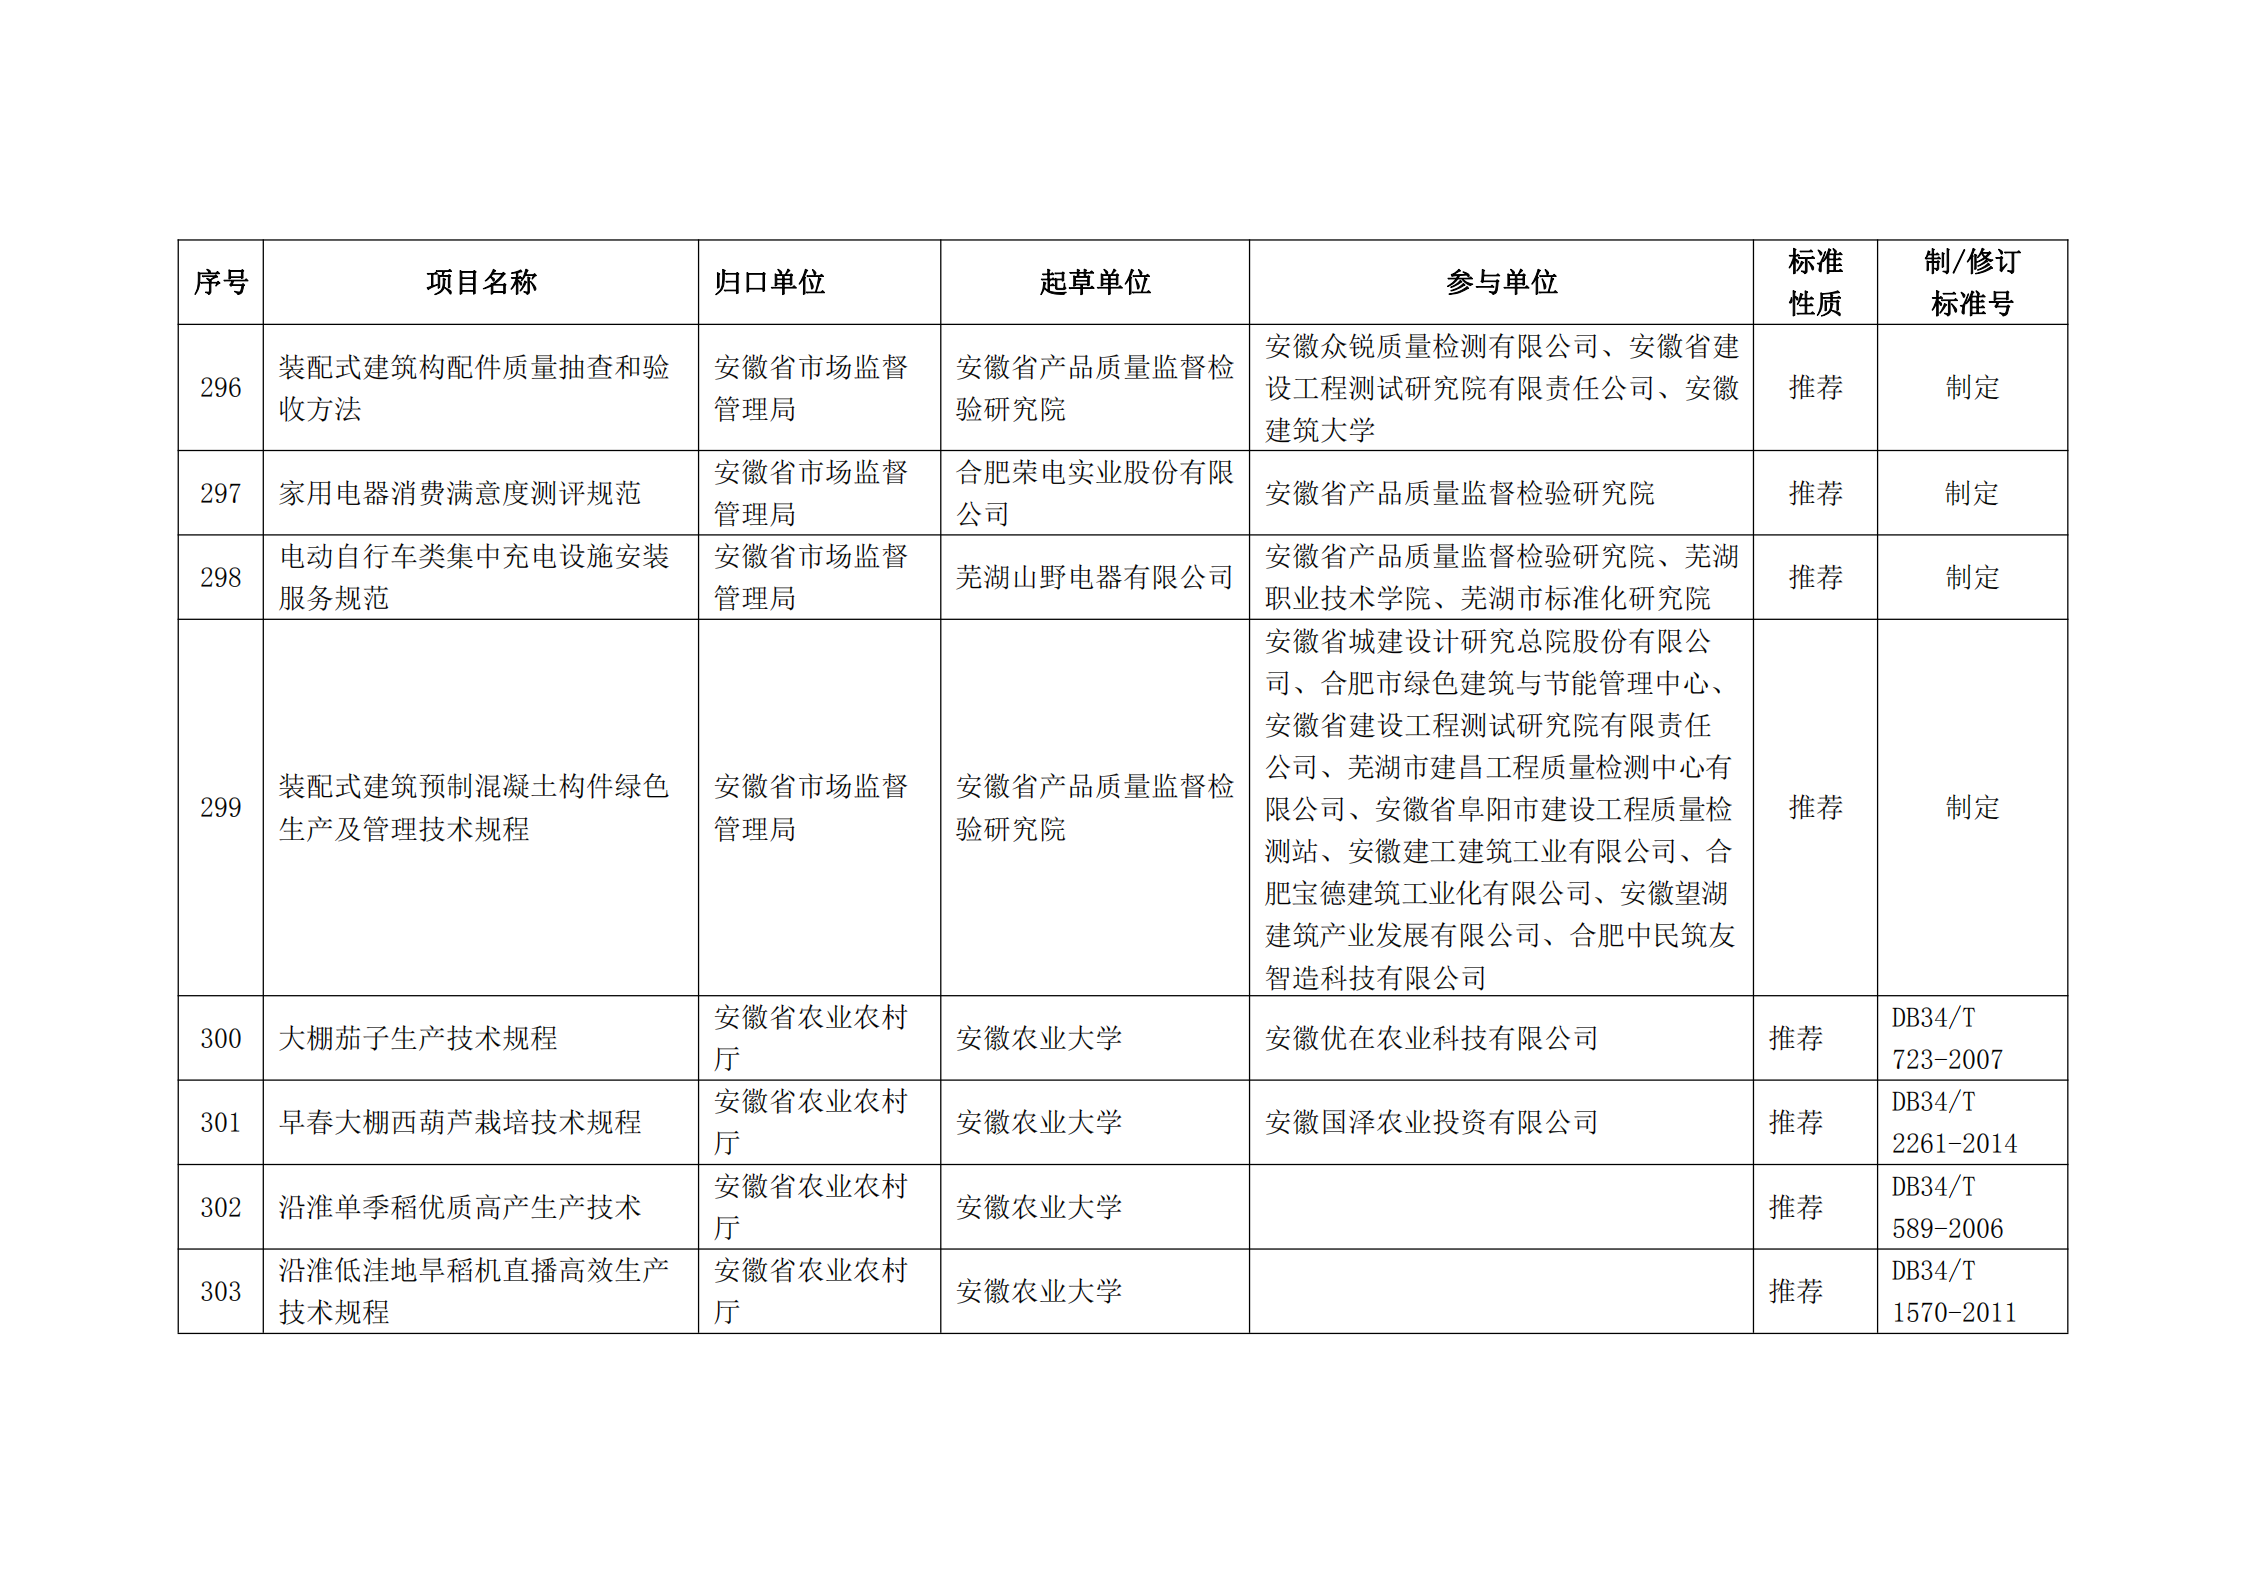 2020 年第二批安徽省地方标准制、修订计划项目汇总表(图33)